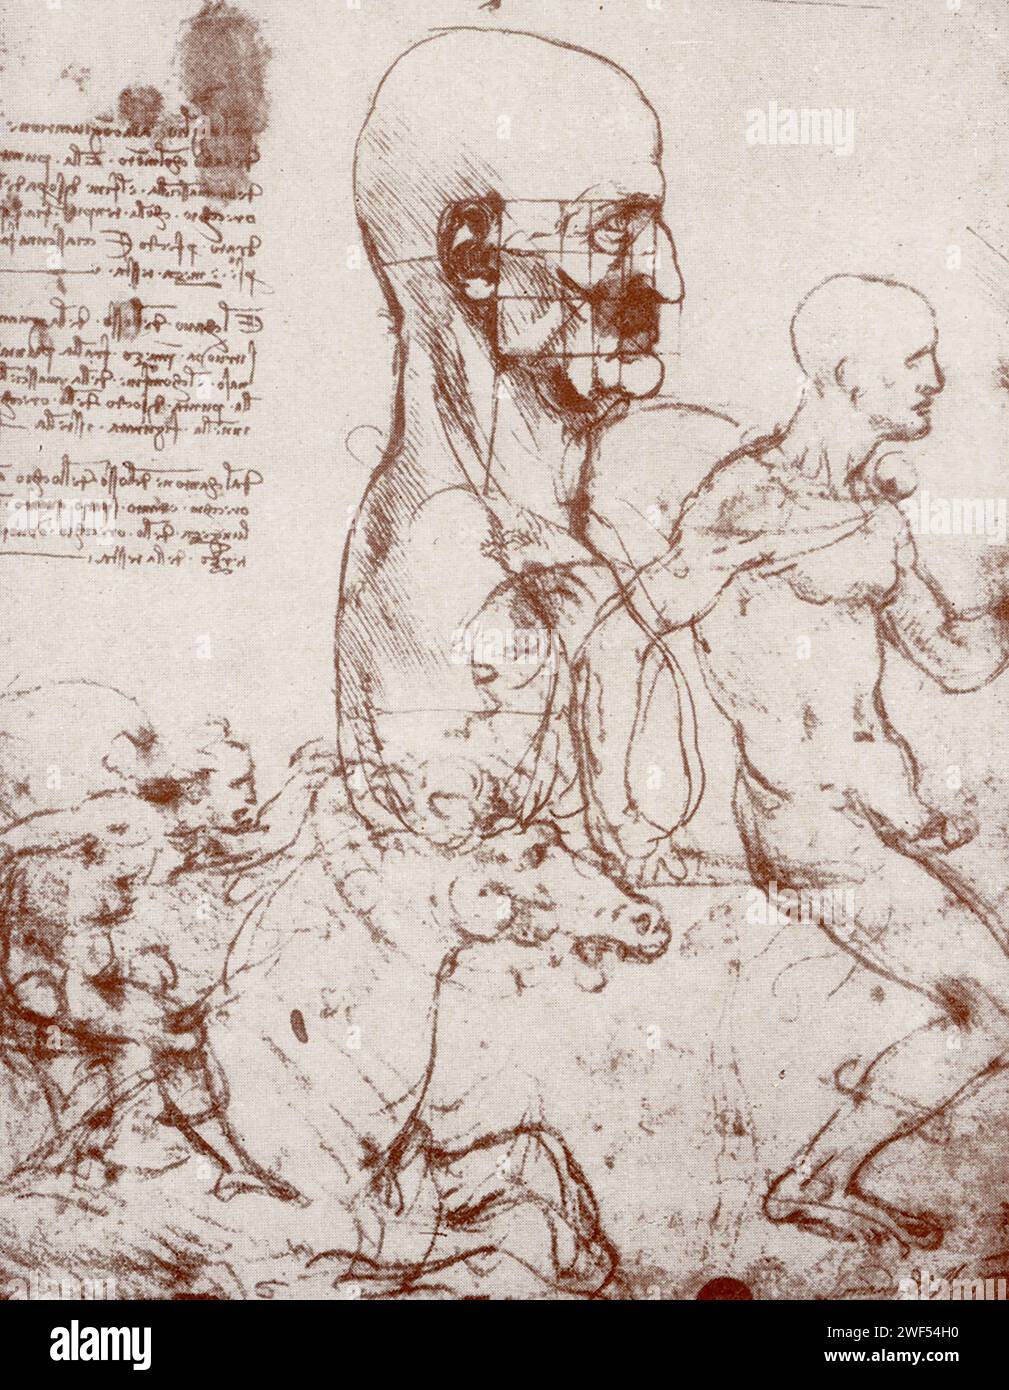 Ici sont des paillettes faites par Leonardo Da Vinci. Leonardo di ser Piero da Vinci (1452-1519) était un polymathe italien de la haute Renaissance qui était actif comme peintre, dessinateur, ingénieur, scientifique, théoricien, sculpteur et architecte. Banque D'Images